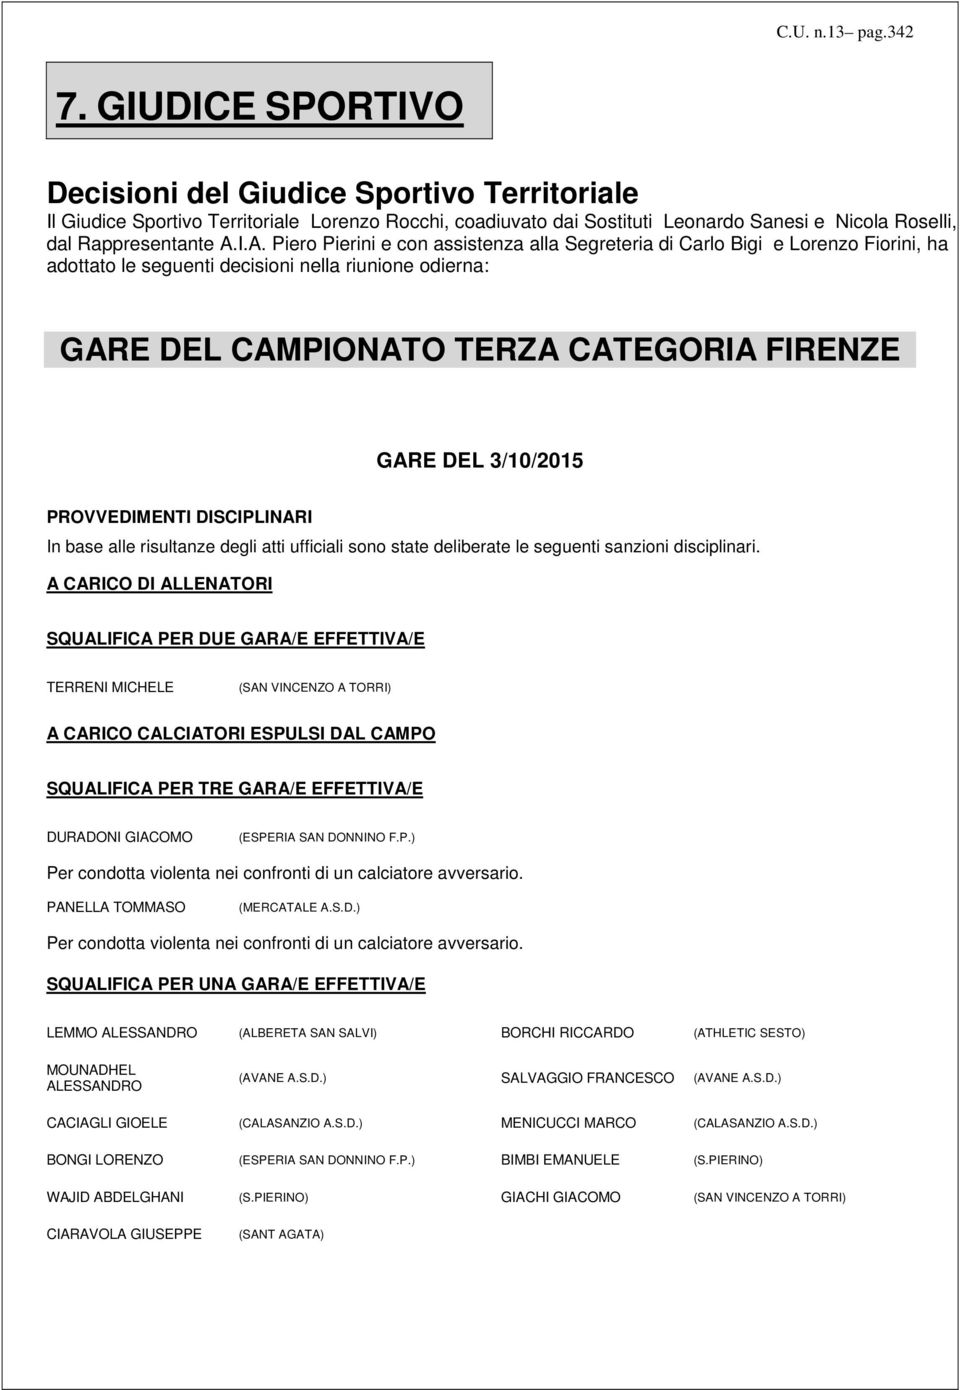 I.A. Piero Pierini e con assistenza alla Segreteria di Carlo Bigi e Lorenzo Fiorini, ha adottato le seguenti decisioni nella riunione odierna: GARE DEL CAMPIONATO TERZA CATEGORIA GARE DEL 3/10/2015